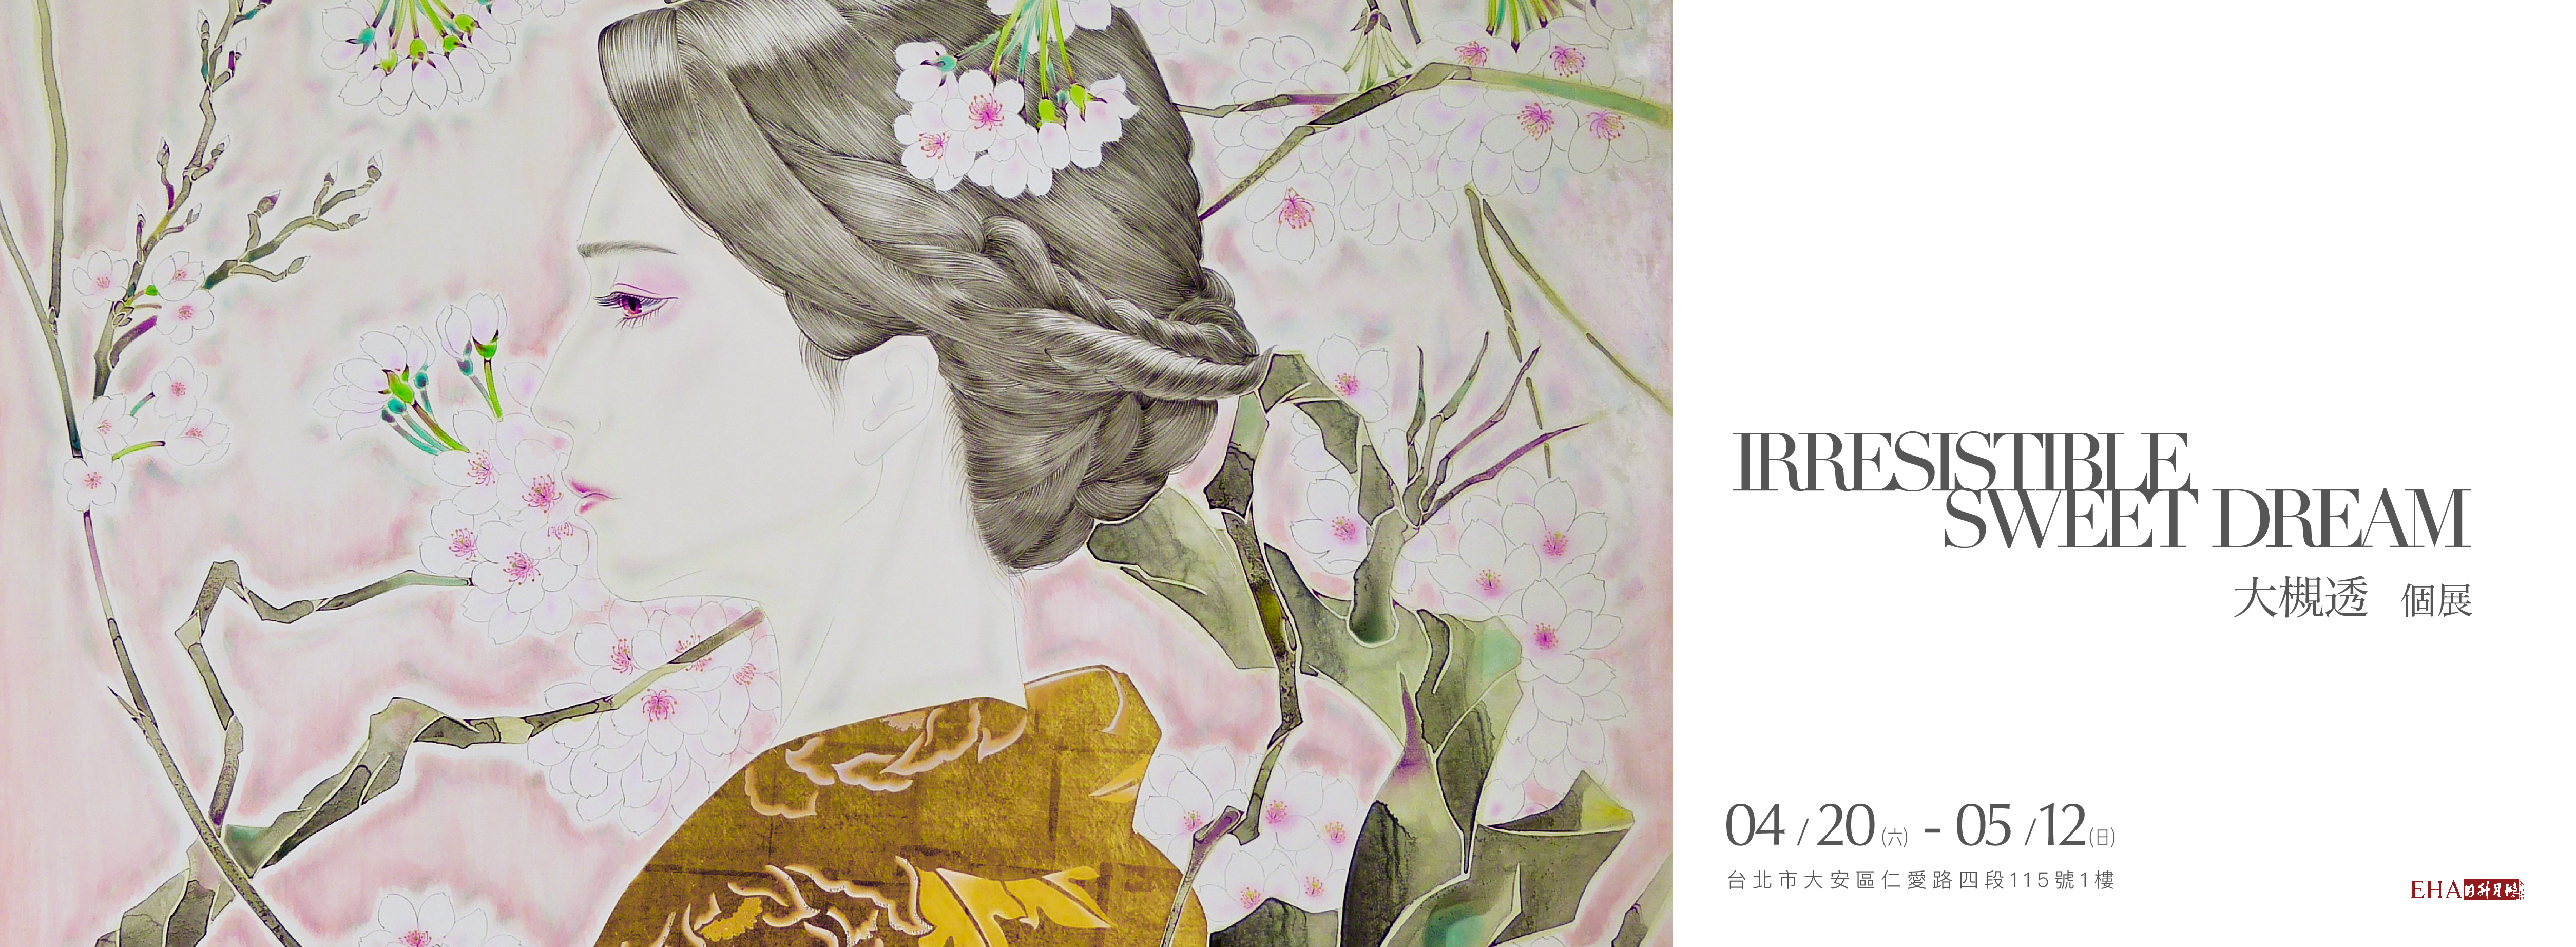 Irresistible Sweet Dreams - Toru Otsuki's Solo Exhibition